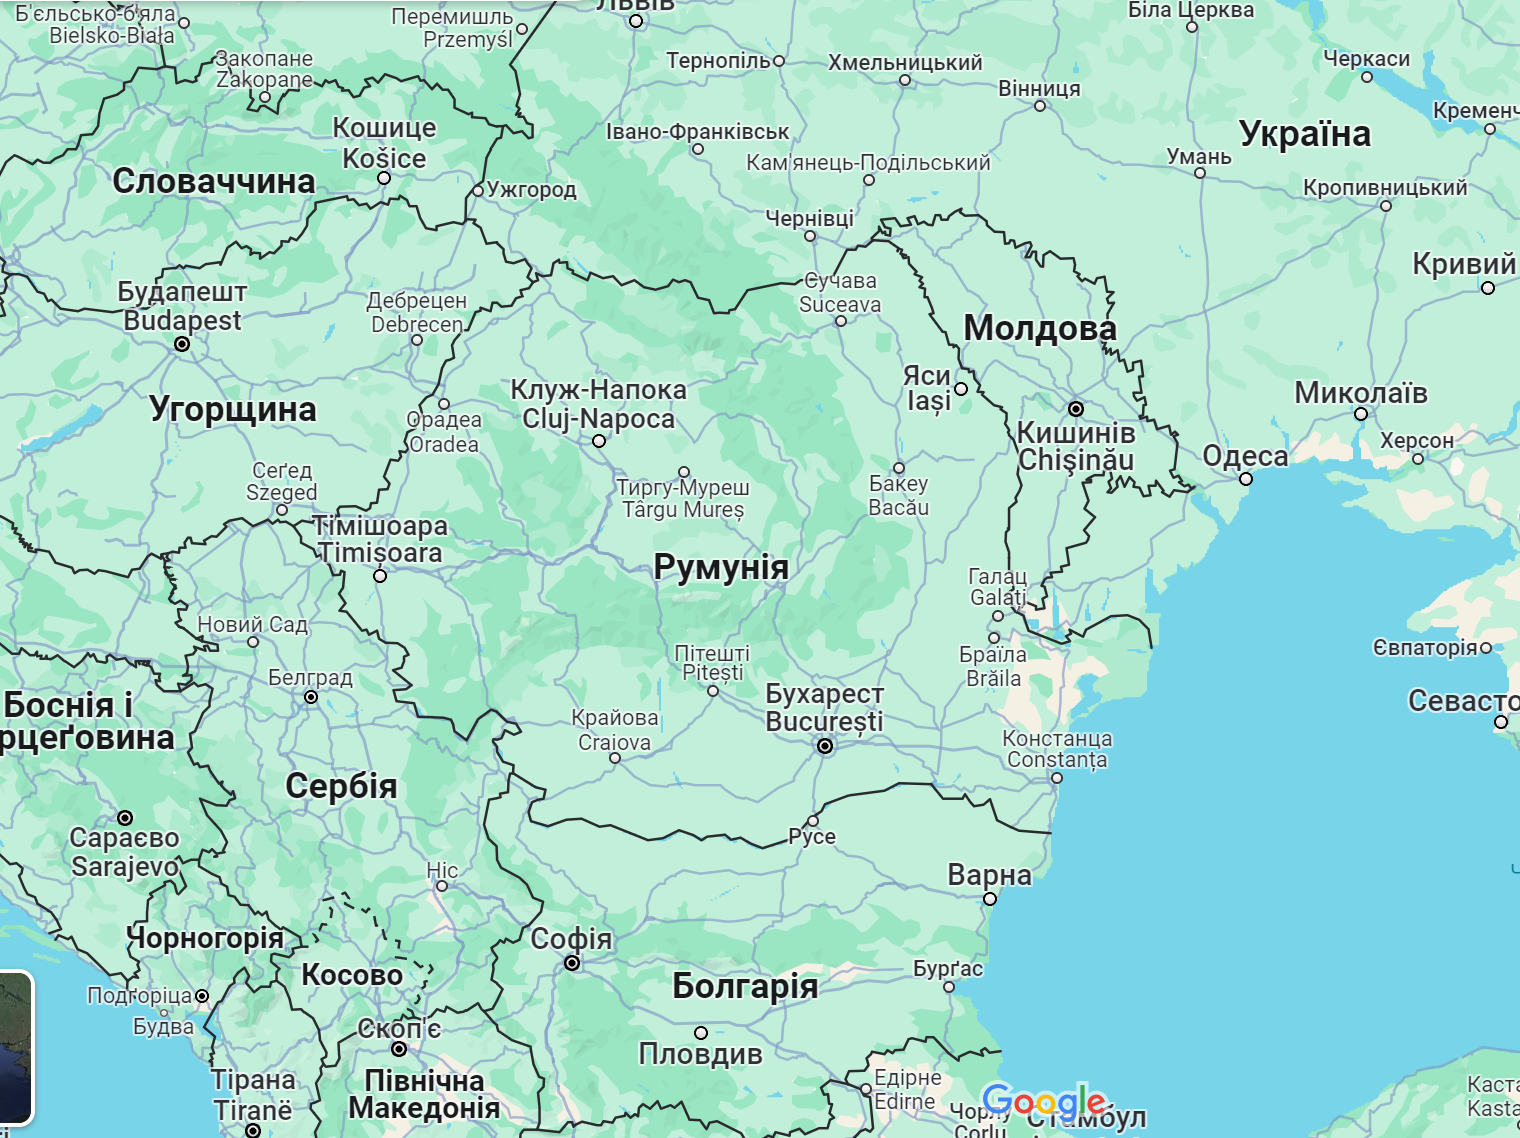 Сильні снігопади в Румунії, Болгарії та Молдові призвели до смертей та відключення електрики